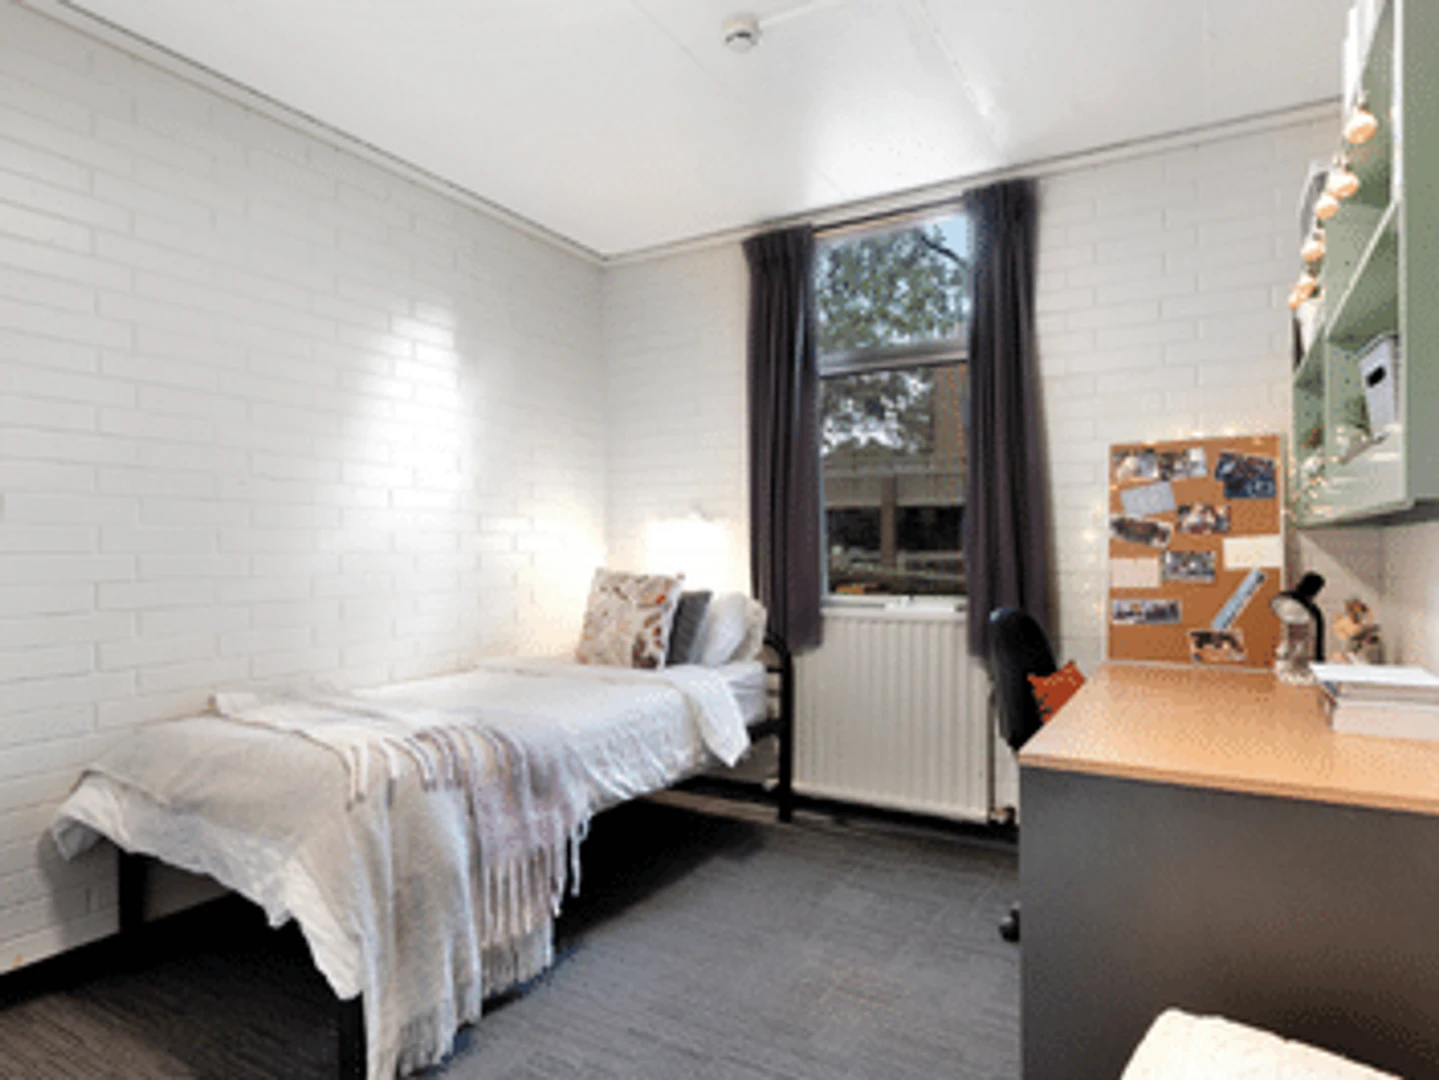 Pokój wspólny w mieszkaniu 3-pokojowym Melbourne